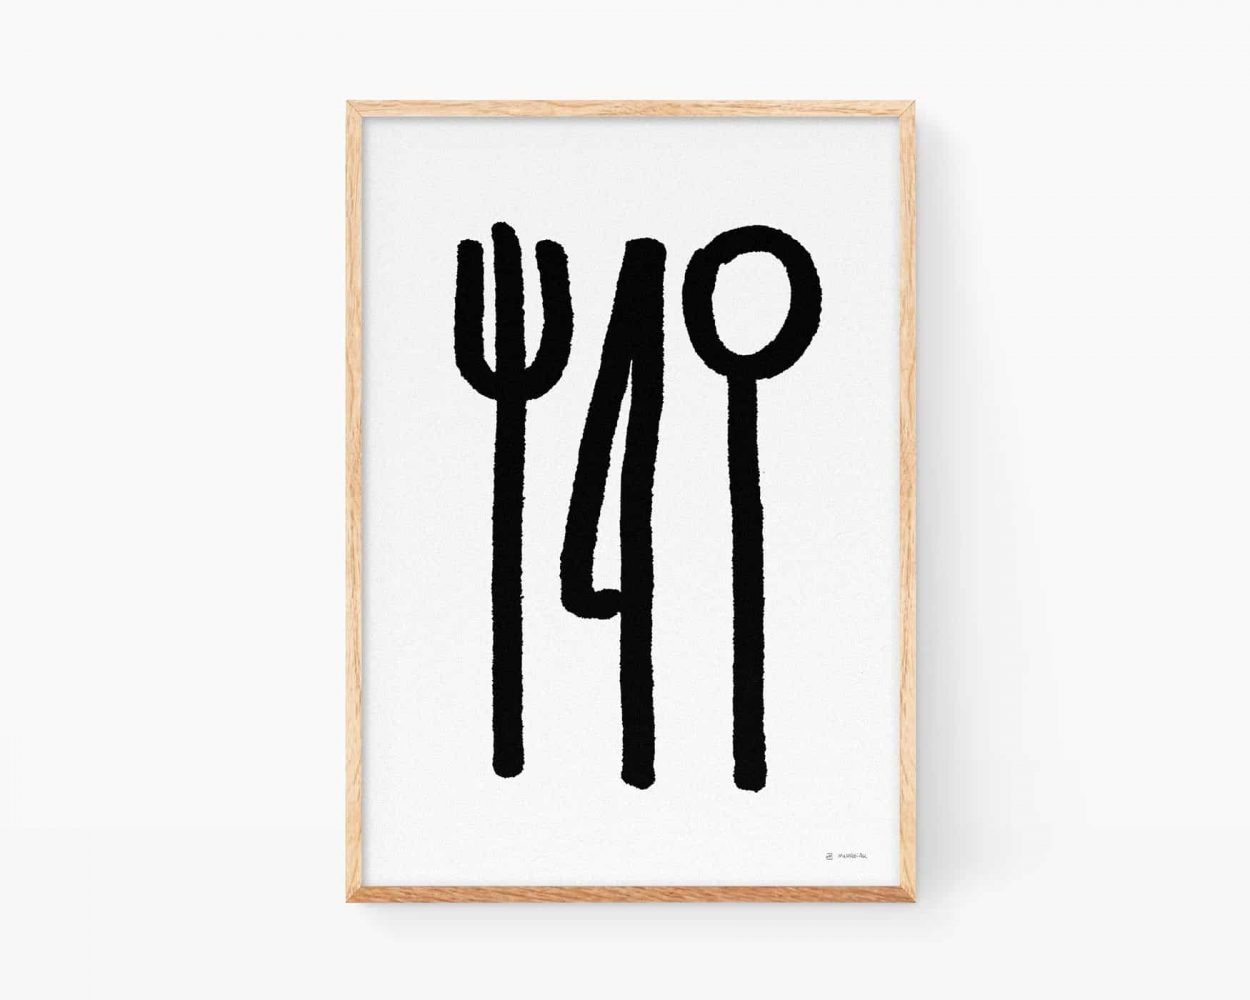 Cuadros decorativos para cocinas. Lámina en blanco y negro para enmarcar con una ilustración minimalista en blanco y negro de unos cubiertos: tenedor, cuchillo y cuchara. Decoración moderna para restaurantes.